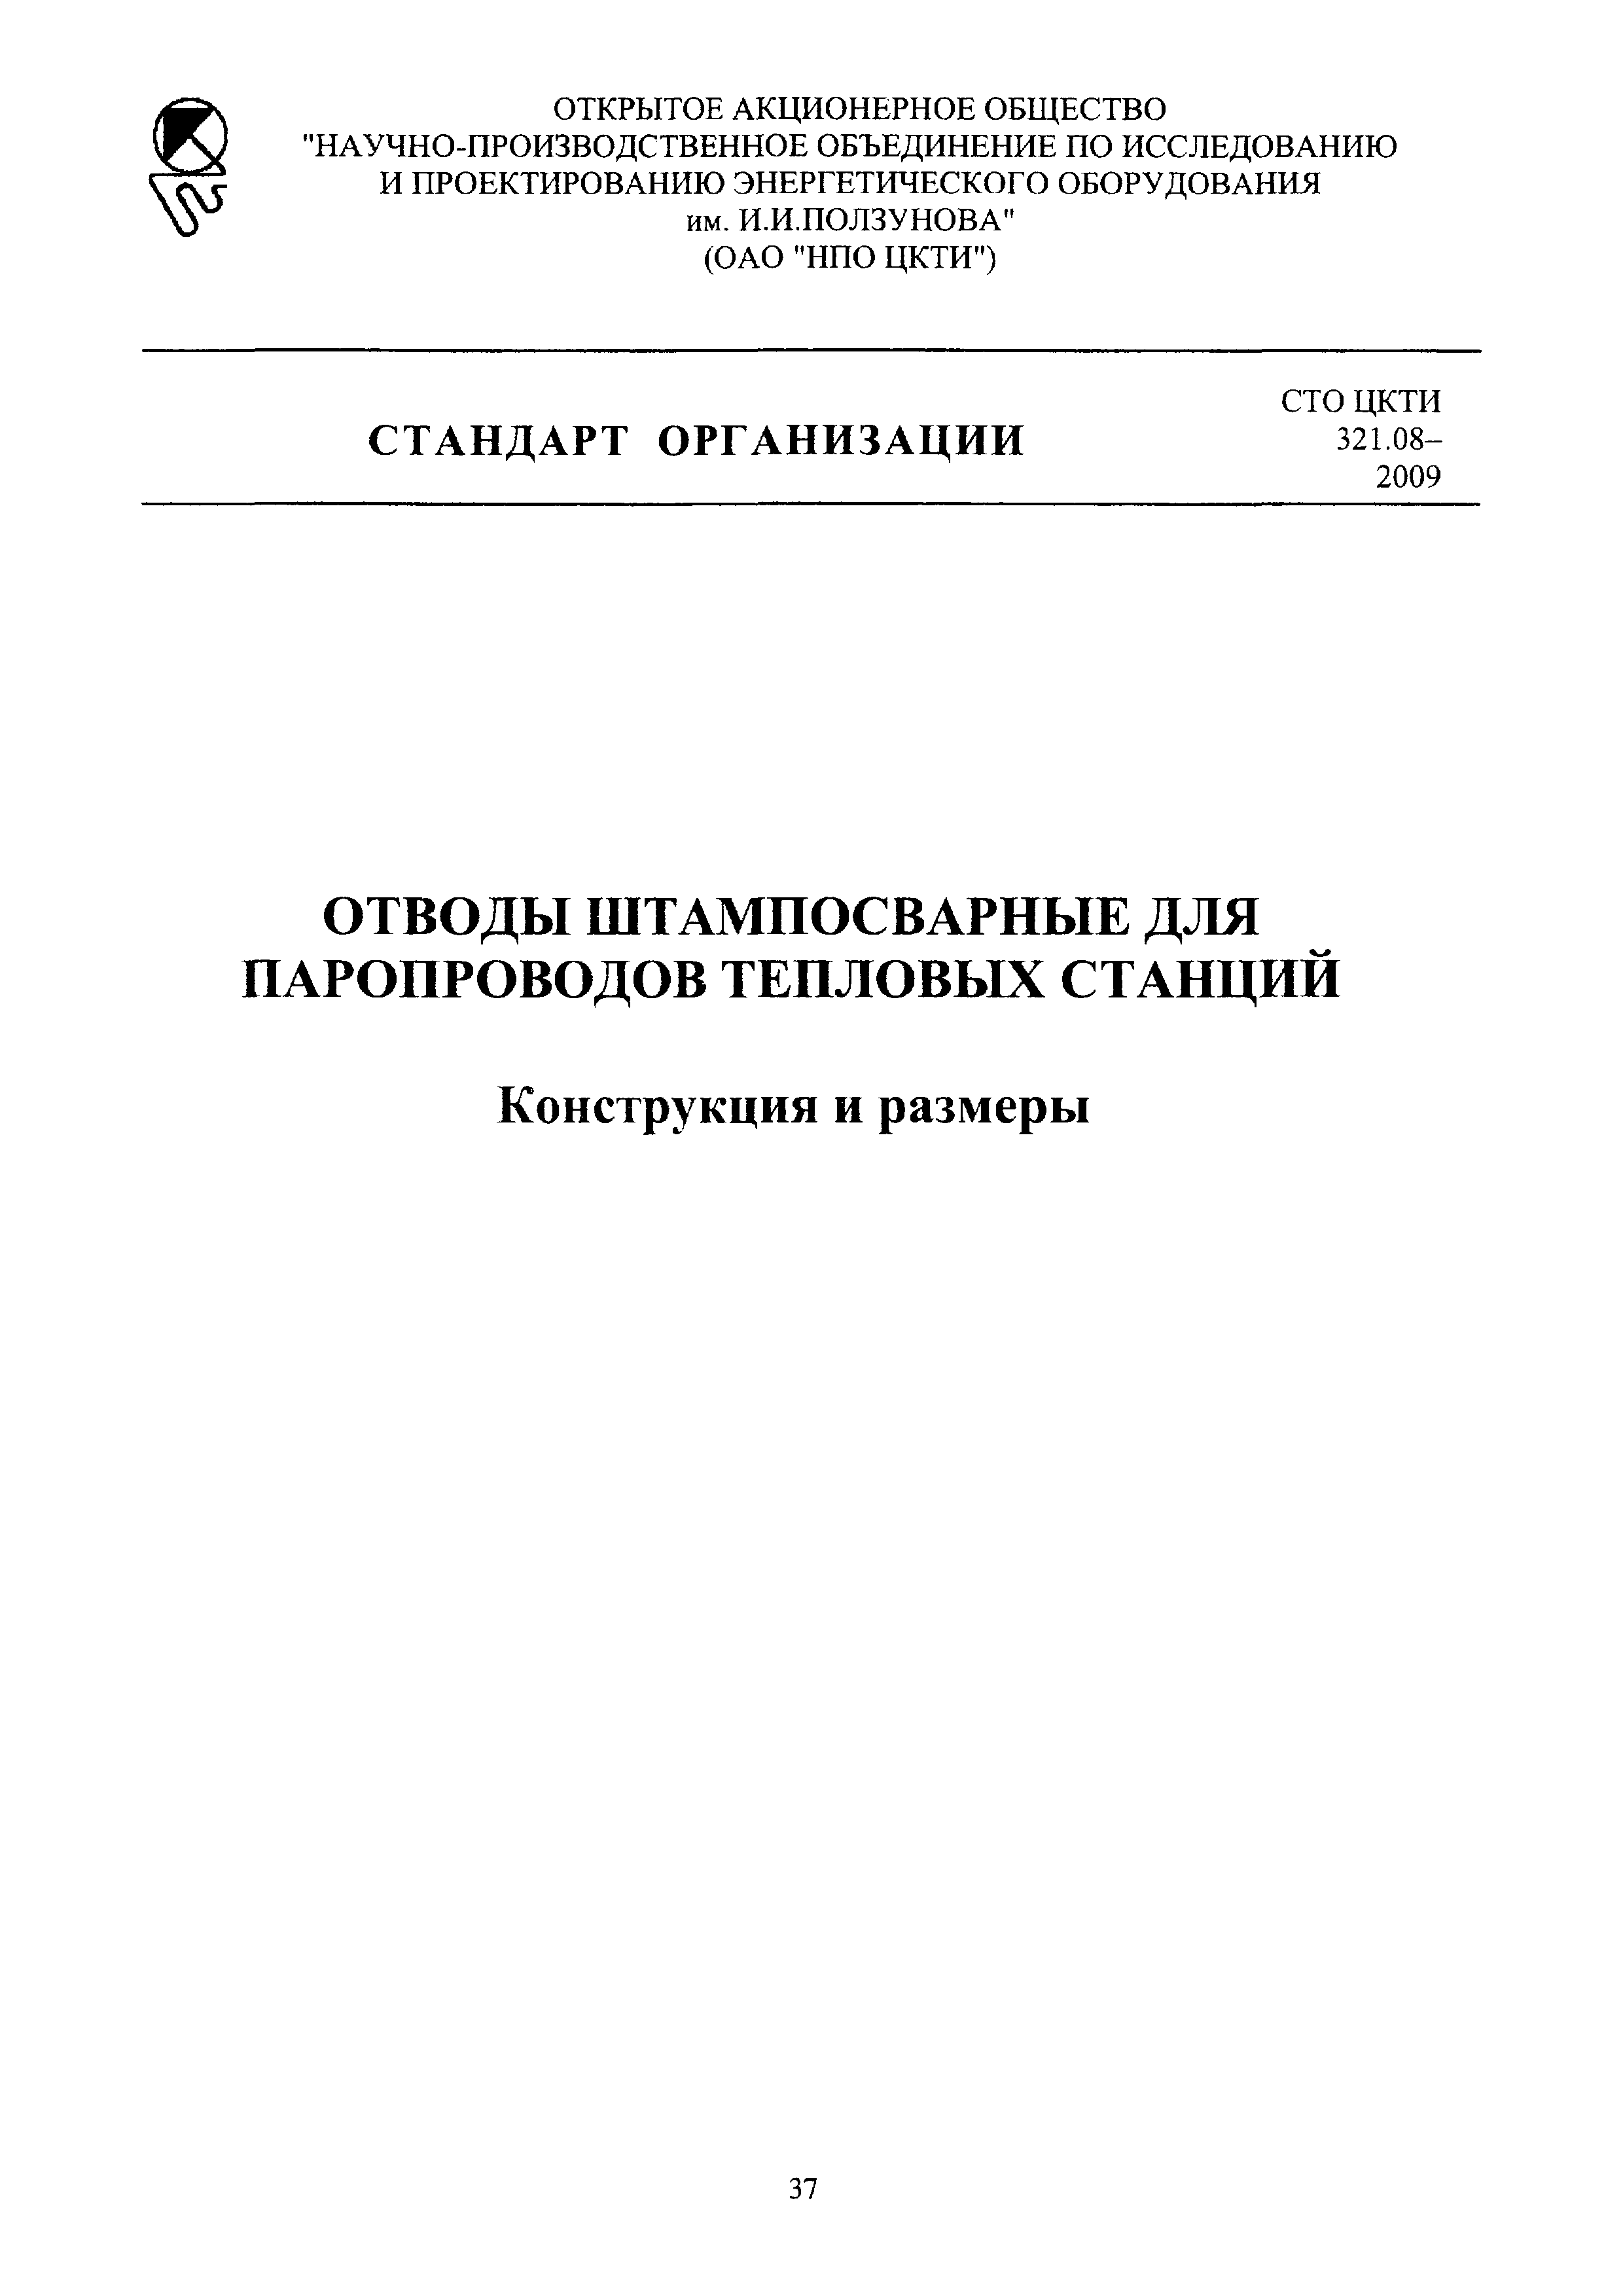 СТО ЦКТИ 321.08-2009